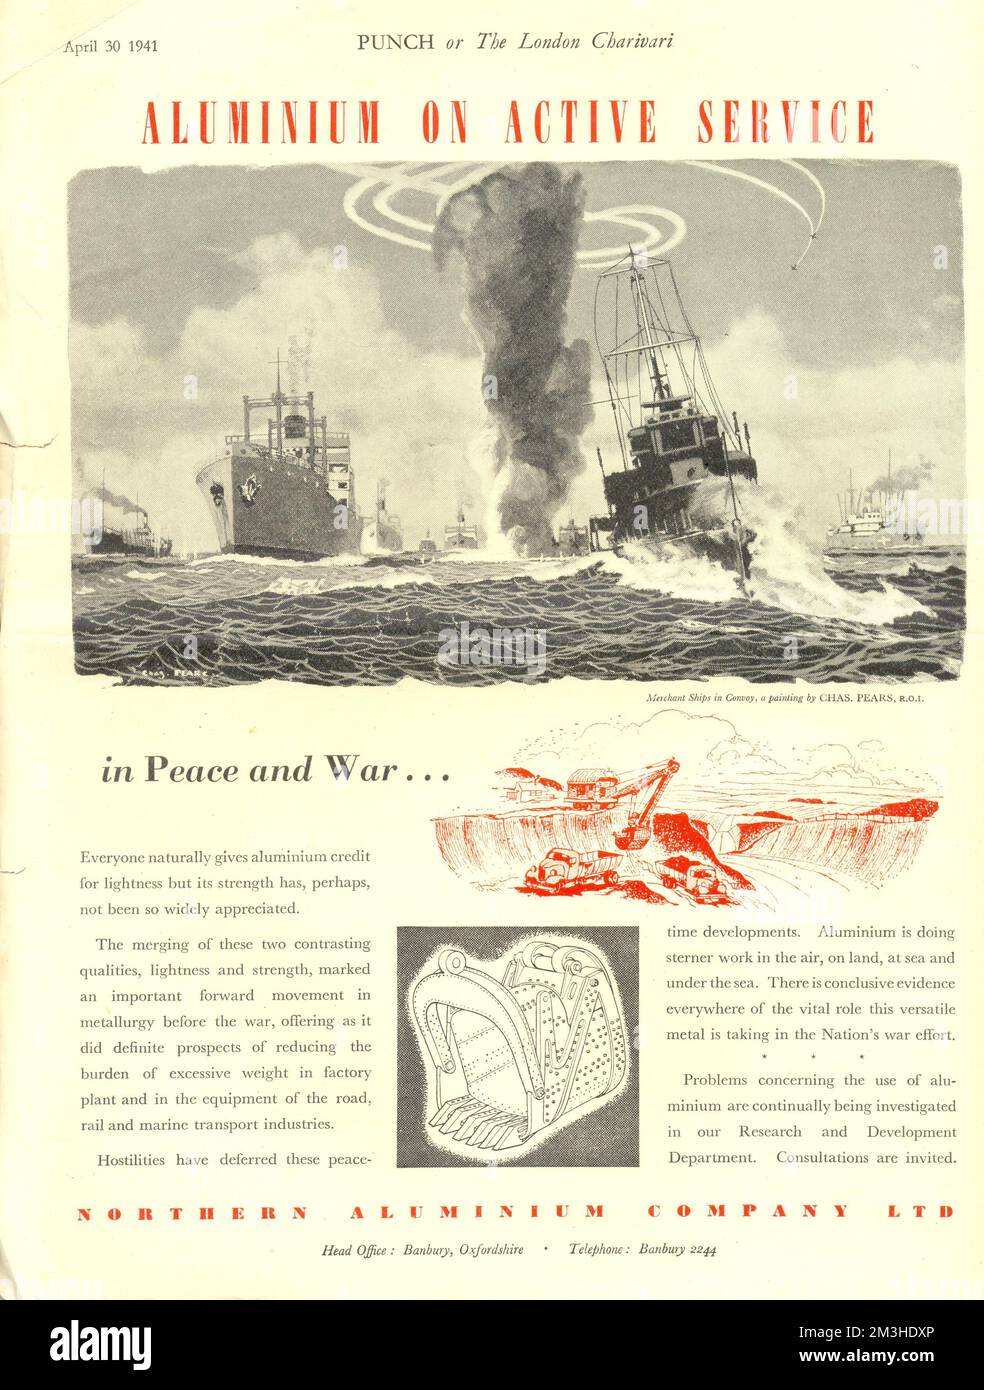 Ganzseitige Werbung für Aluminium über aktiven Dienst in Frieden und Krieg im Magazin „Punch“ vom 30. April 1941, illustriert von Handelsschiffen im Konvoi aus einem Gemälde von Charles Pears Stockfoto